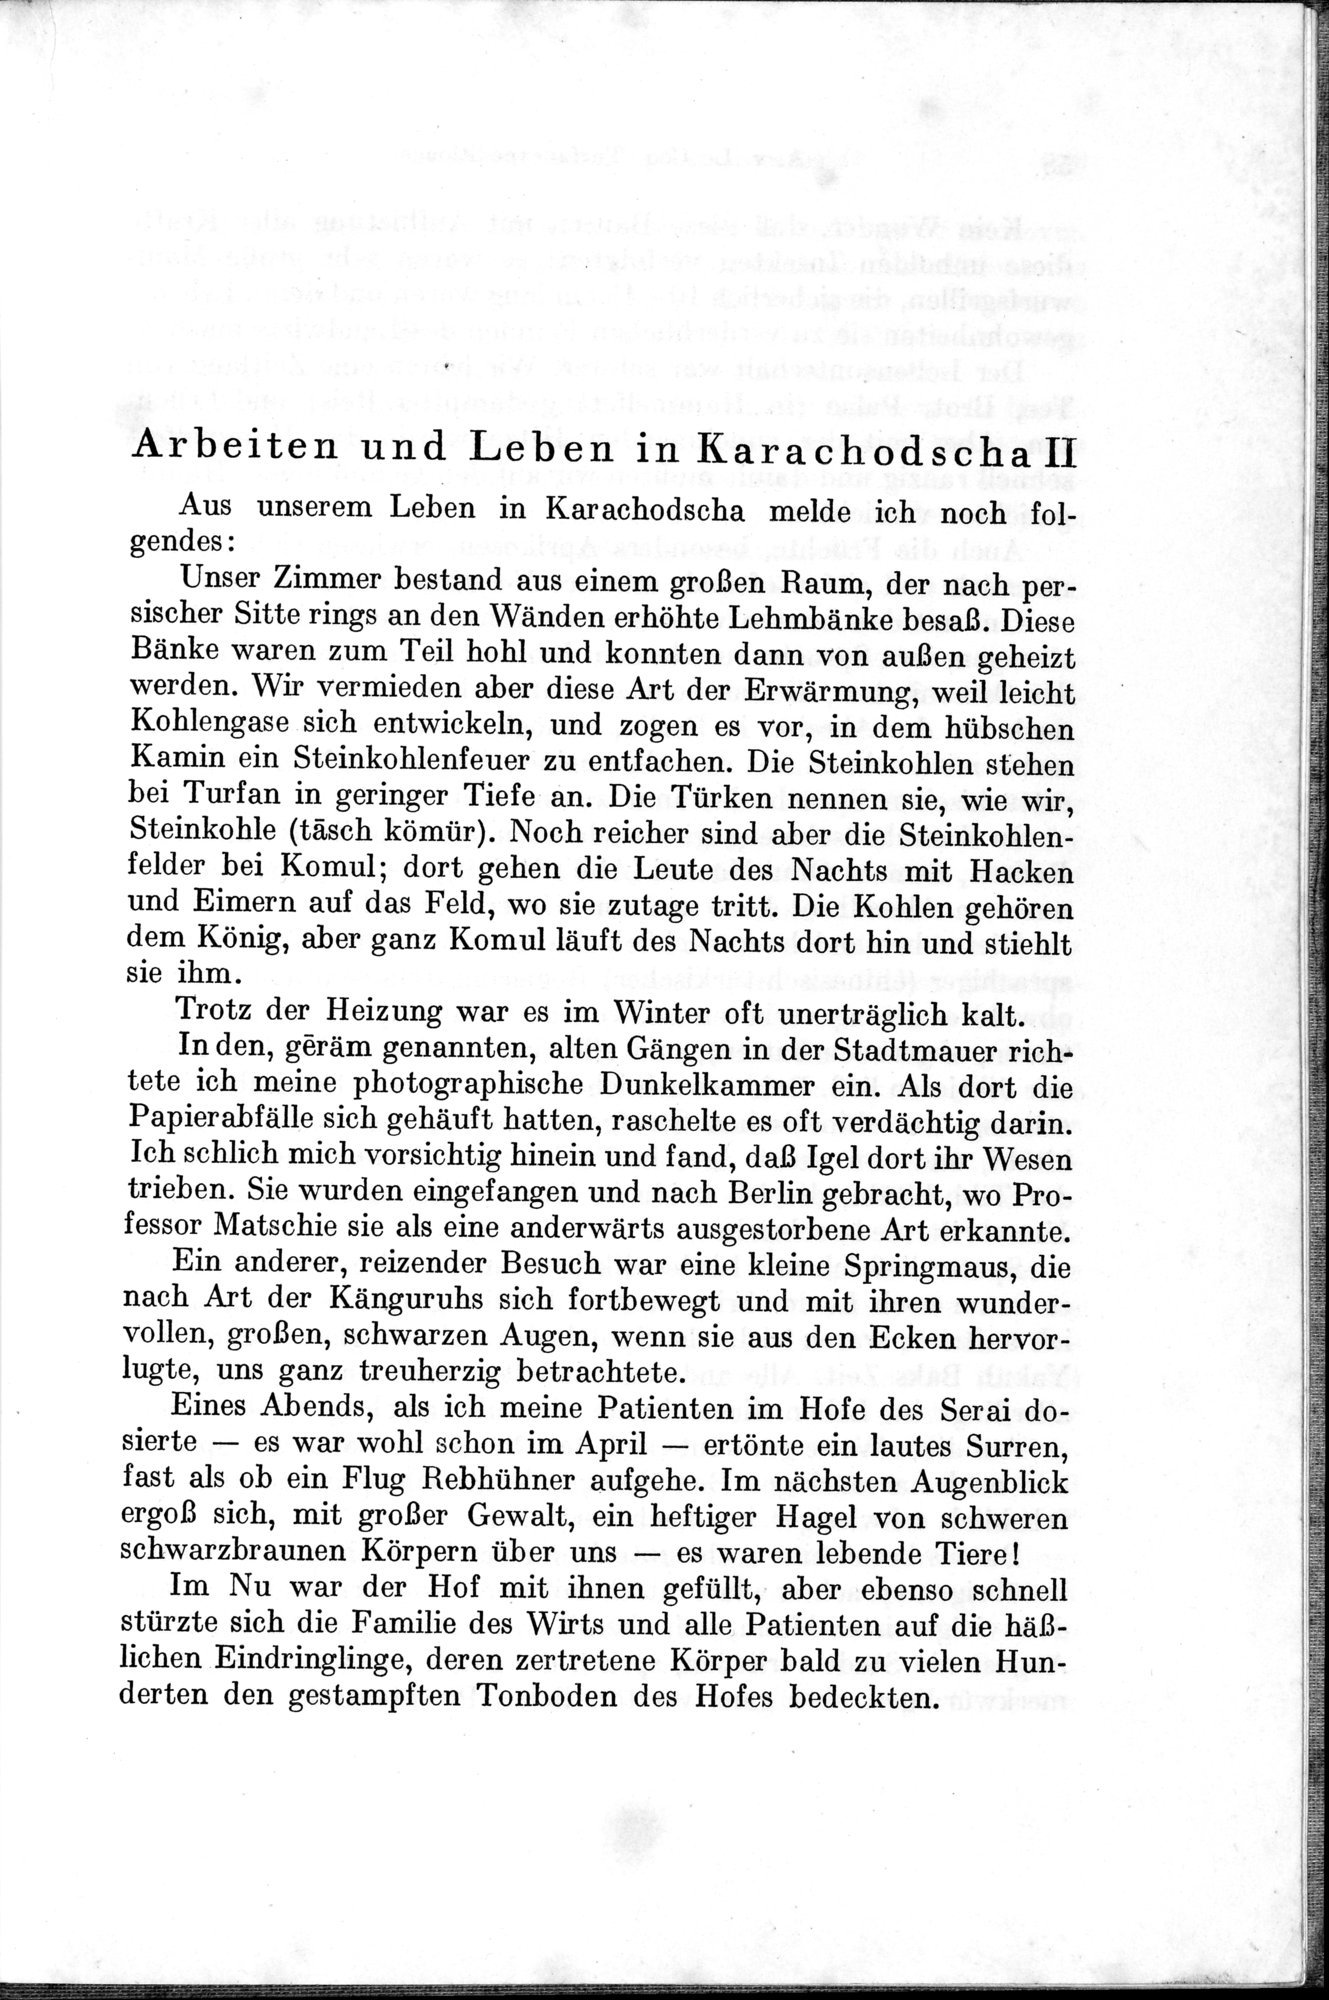 Auf Hellas Spuren in Ostturkistan : vol.1 / Page 89 (Grayscale High Resolution Image)